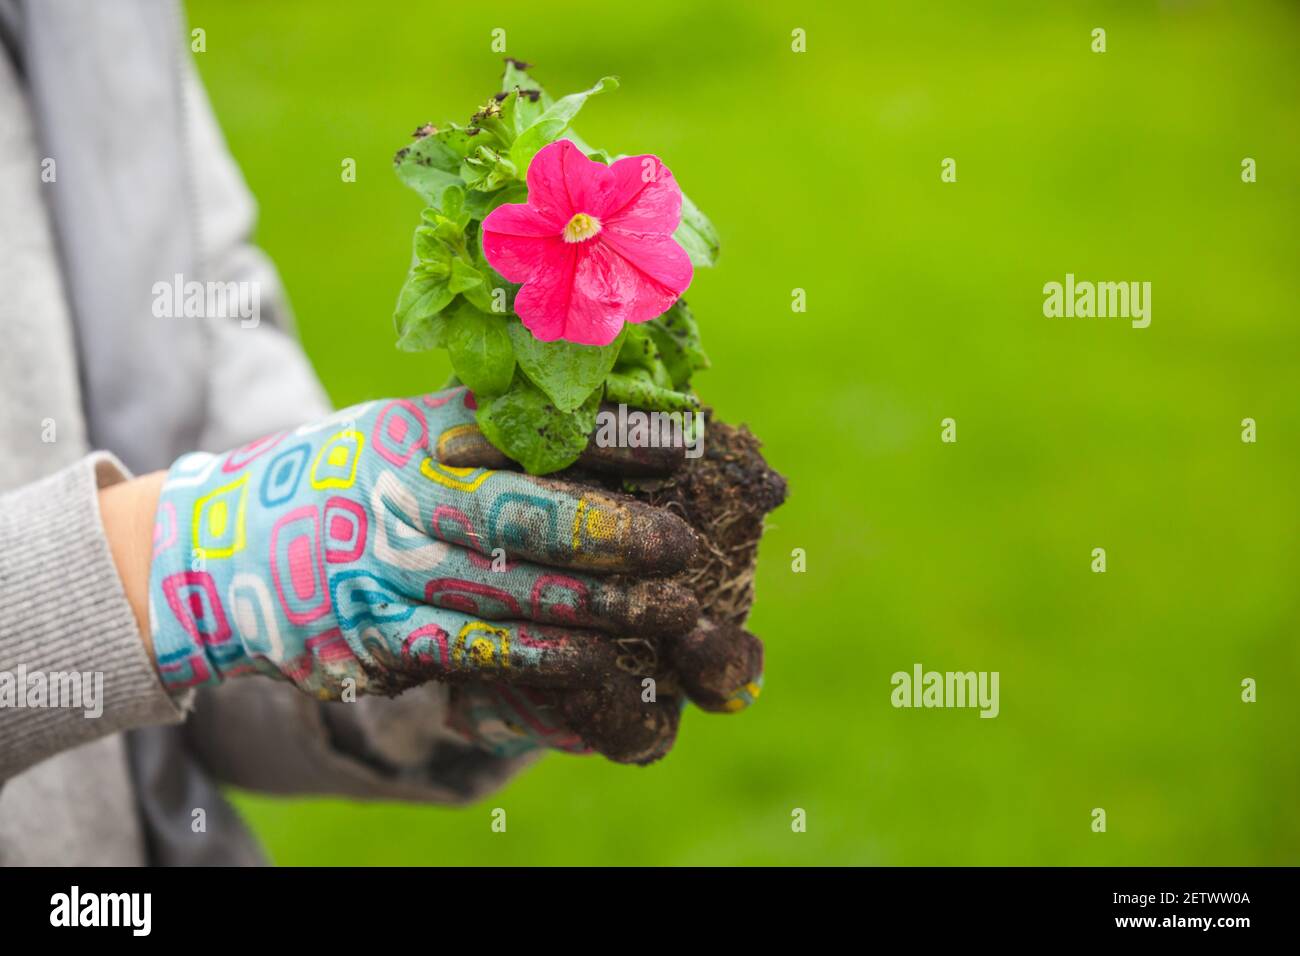 Il giardiniere tiene la piantina di petunia con fiore rosso, foto ravvicinata con messa a fuoco selettiva Foto Stock